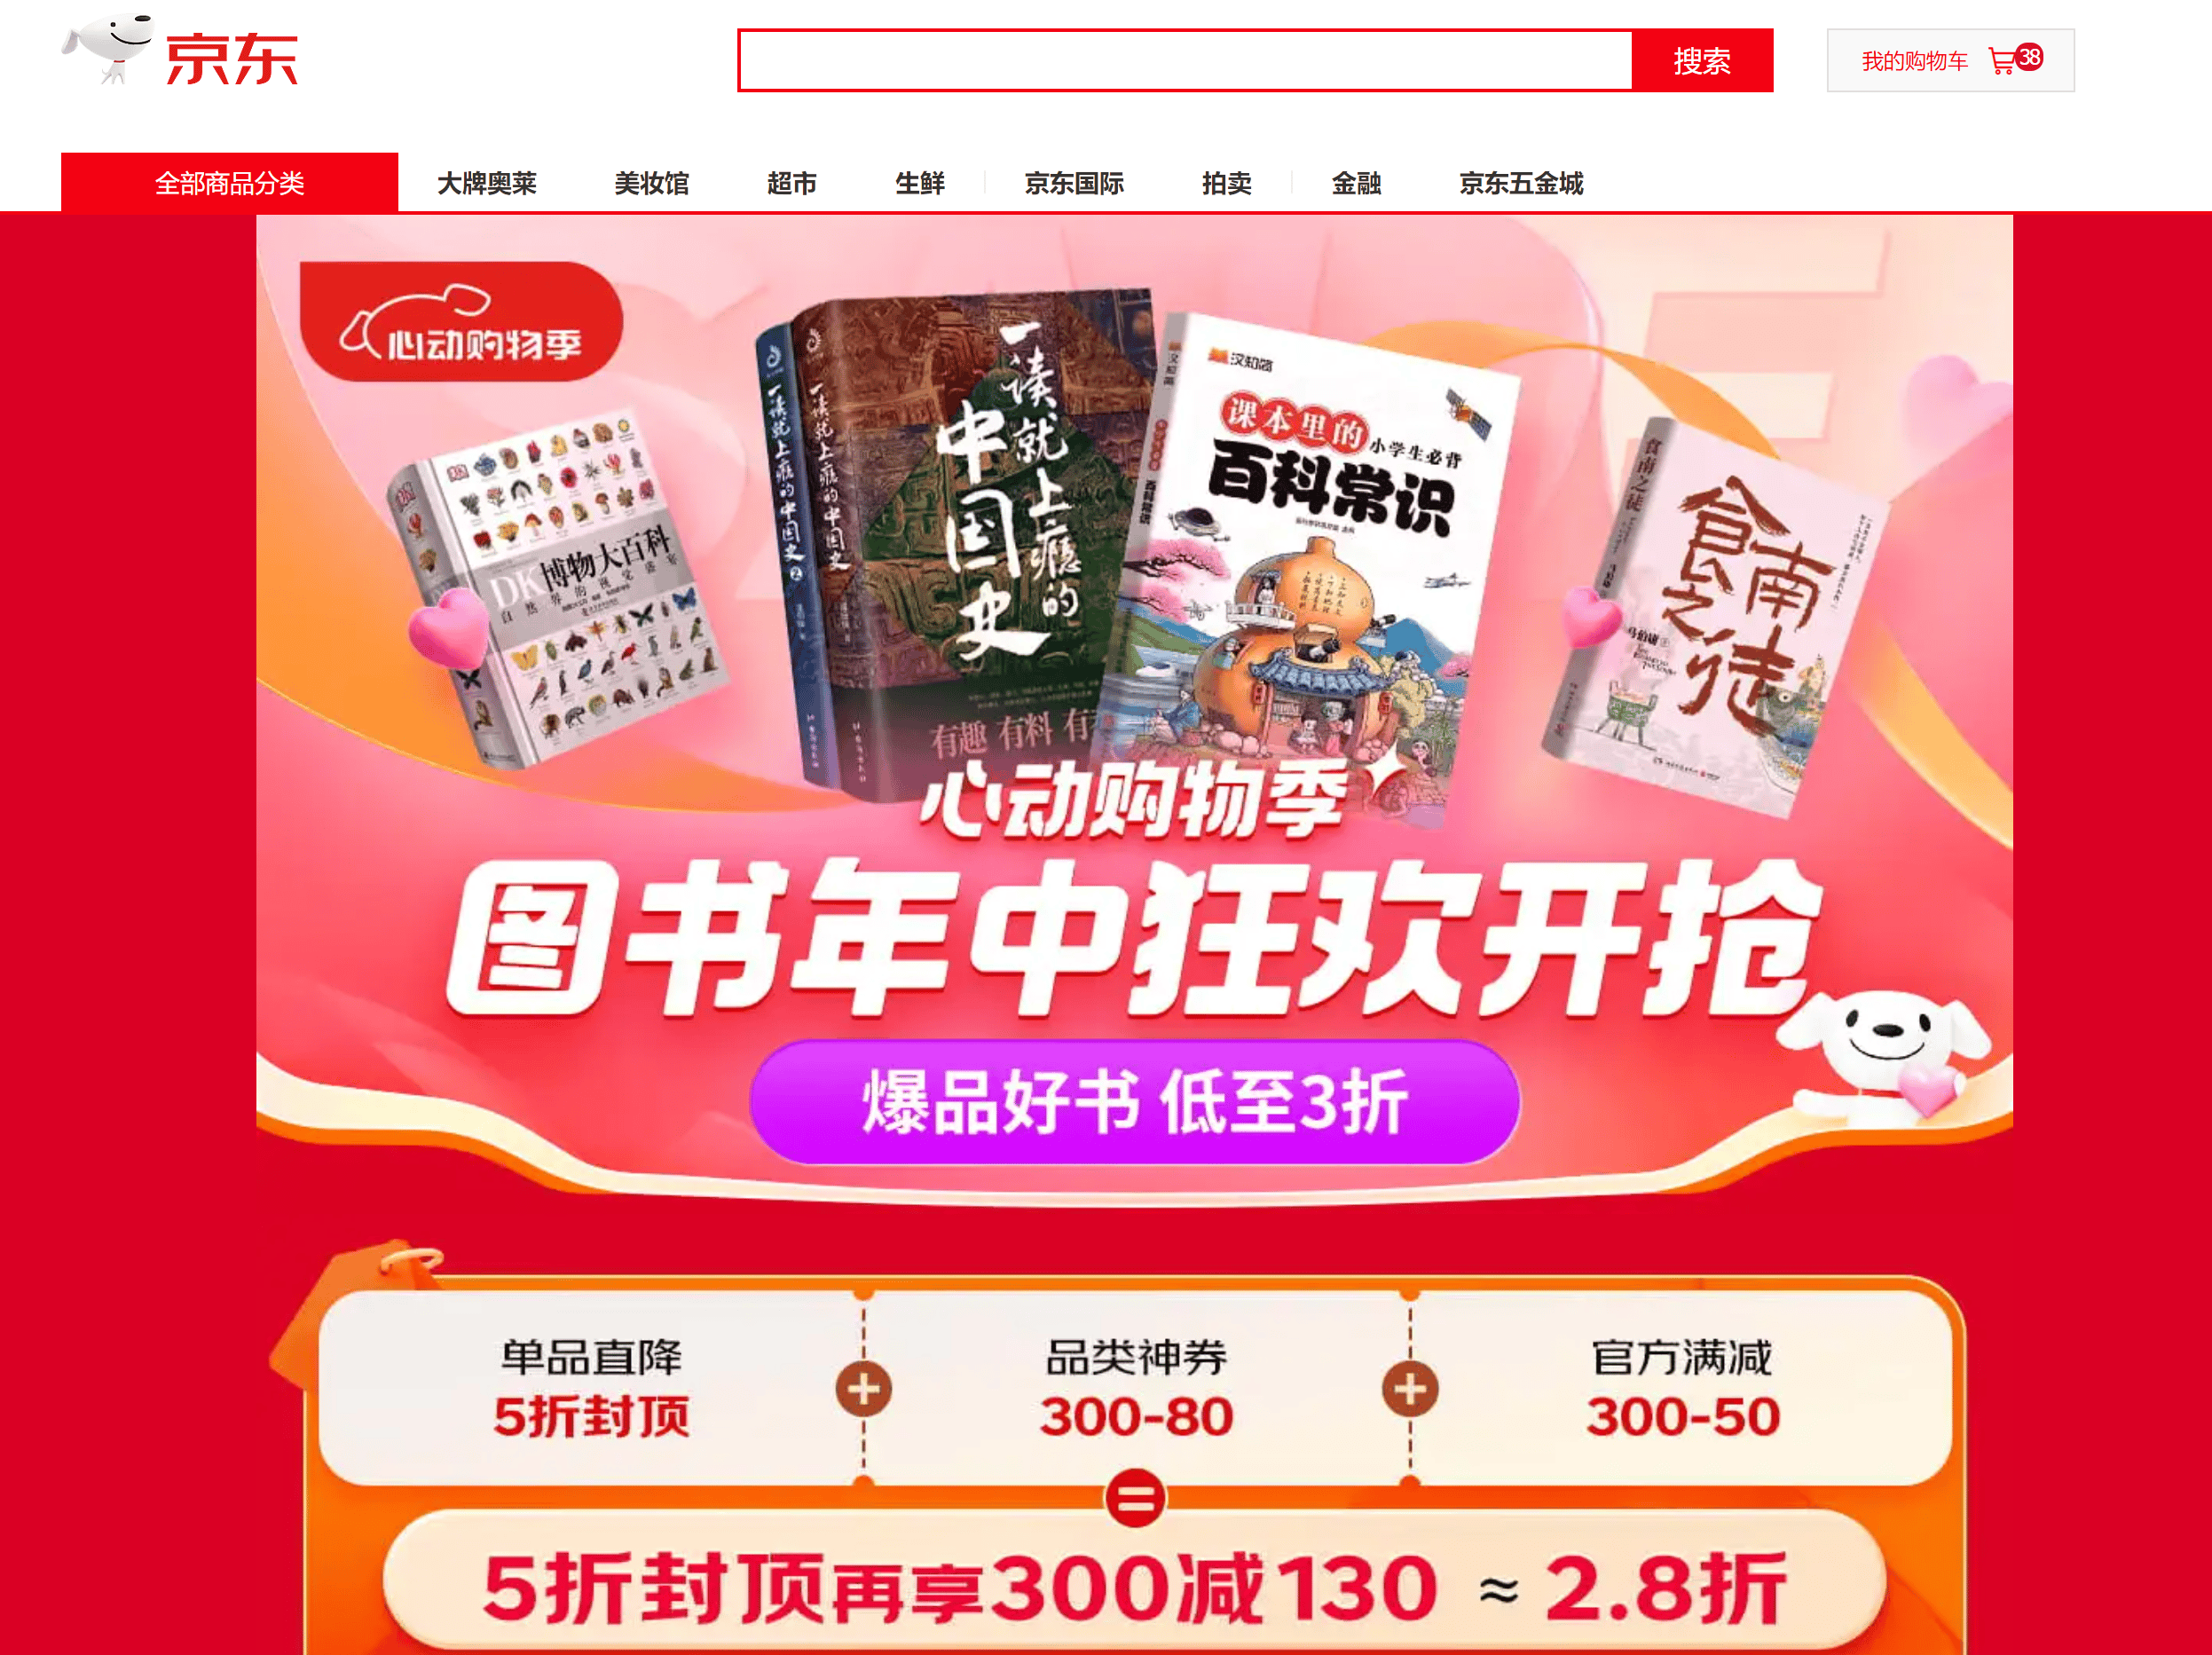 56家出版社抵制京东贱卖图书 刘强东曾放话不允许图书业务盈利